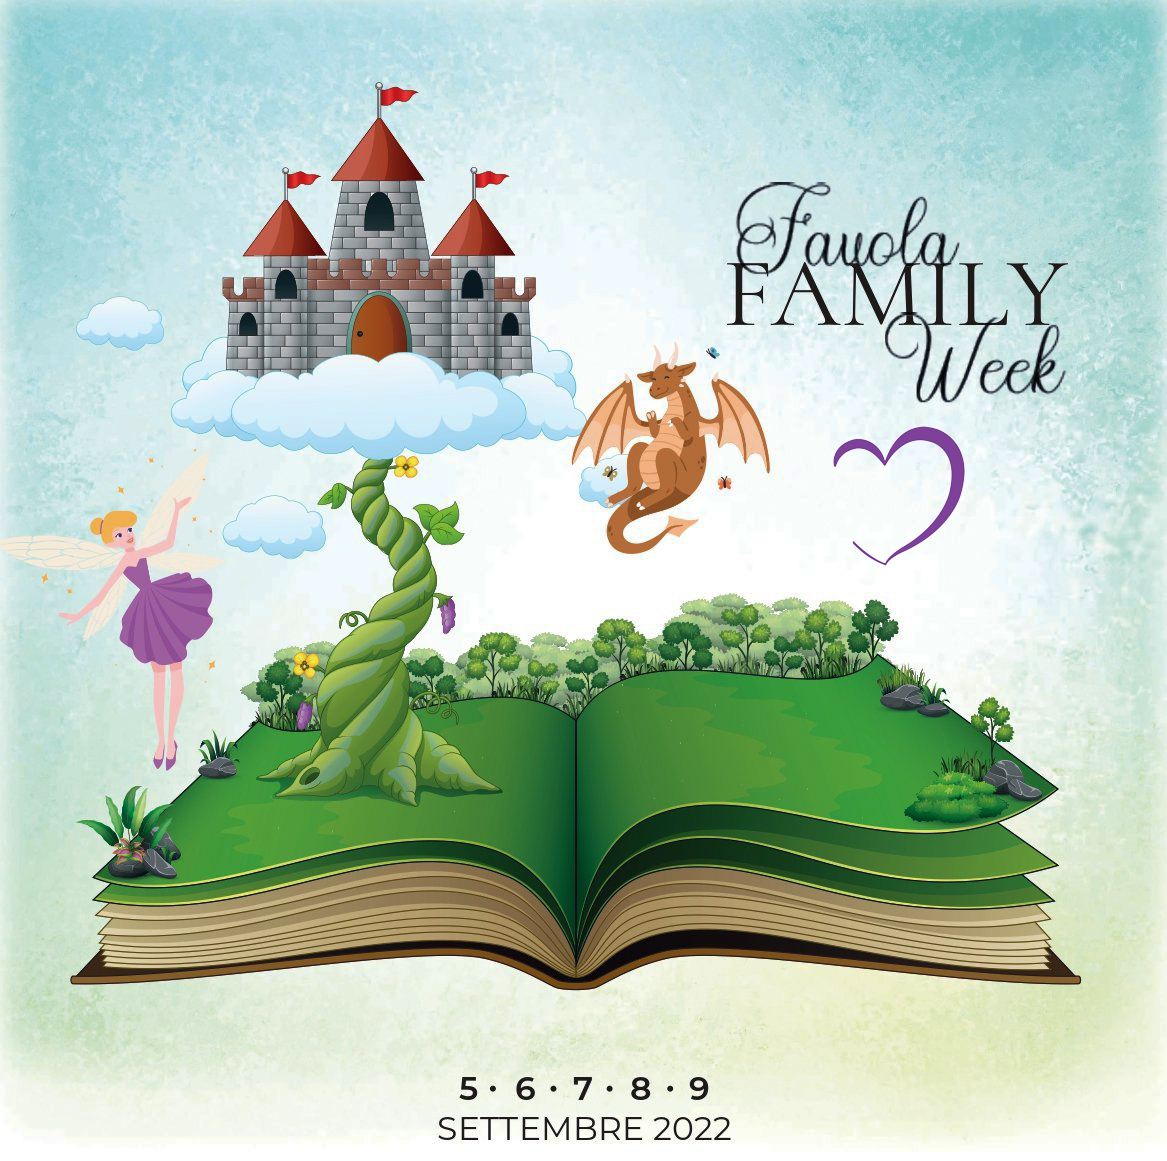 Favola Family Week, il paradiso delle fiabe per la fantasia dei bambini